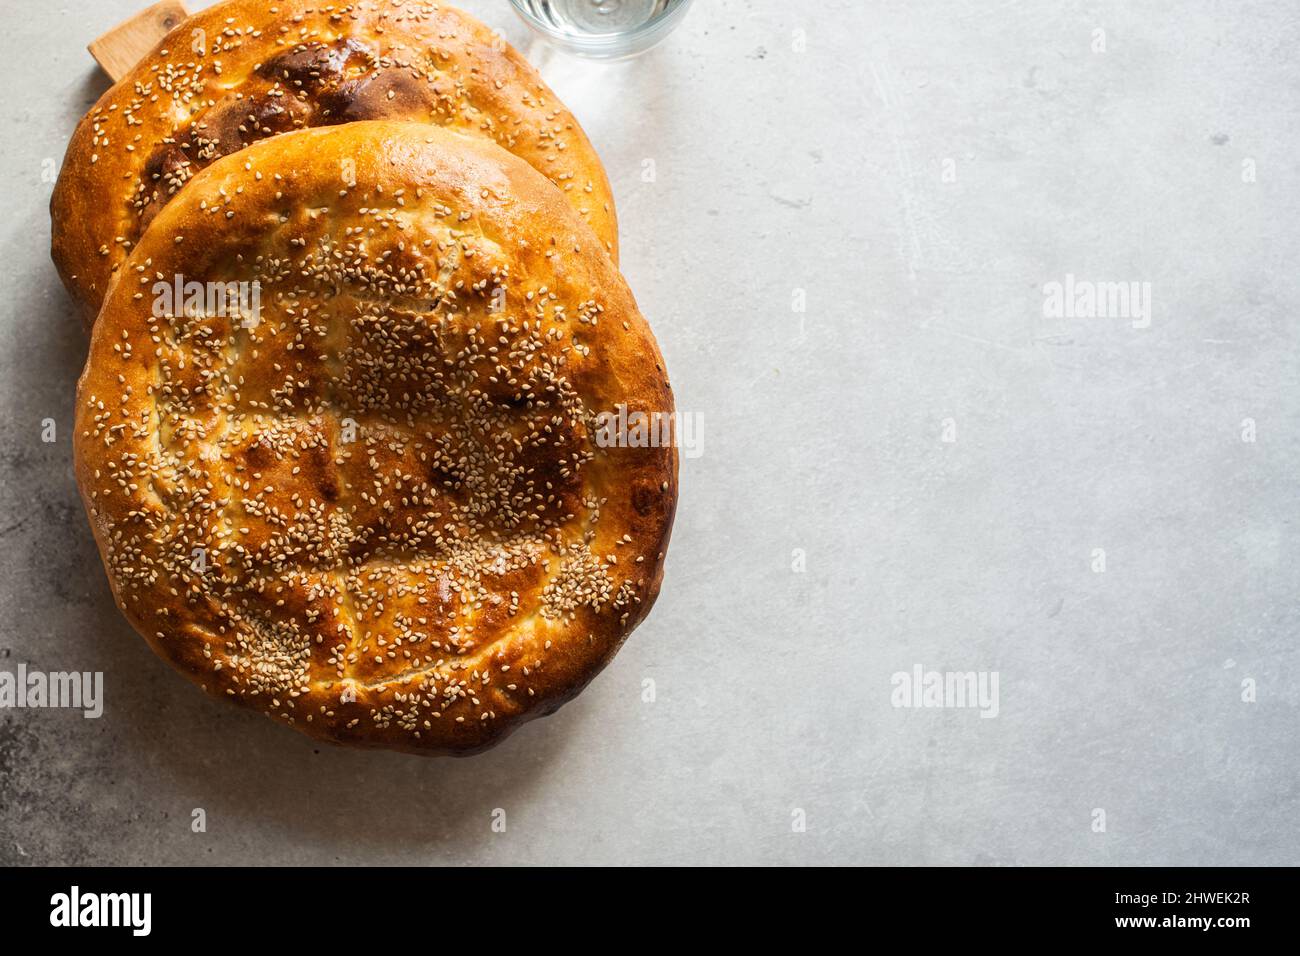 Deux pains plats fraîchement cuits - paide de Ramadan. Populaire pain turc pendant le mois de Holi Ramadan. Copier l'espace. Banque D'Images